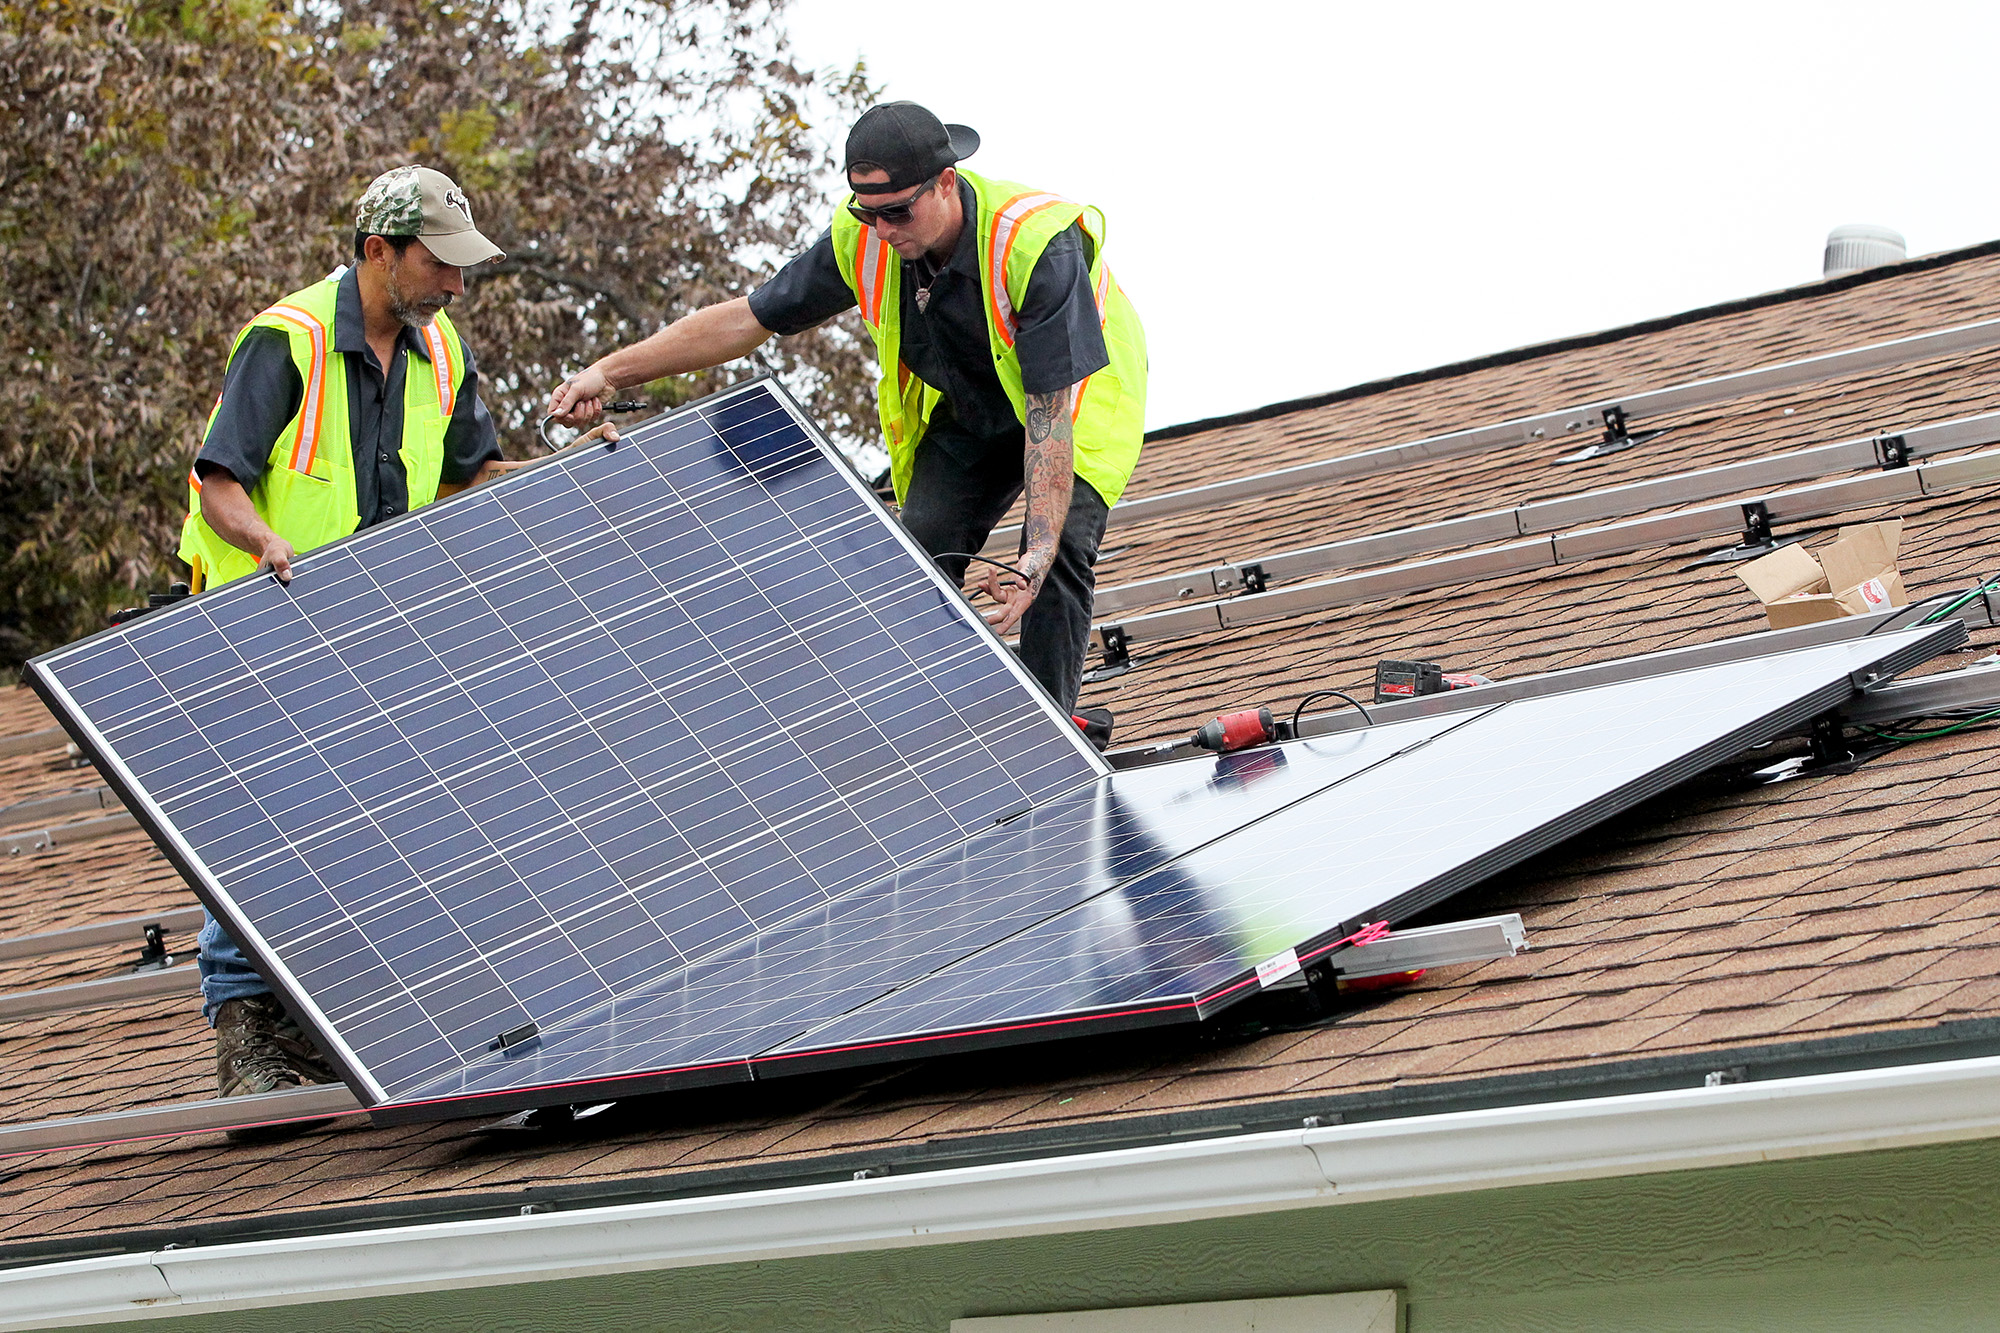 cps-energy-adopting-new-solar-rebate-policies